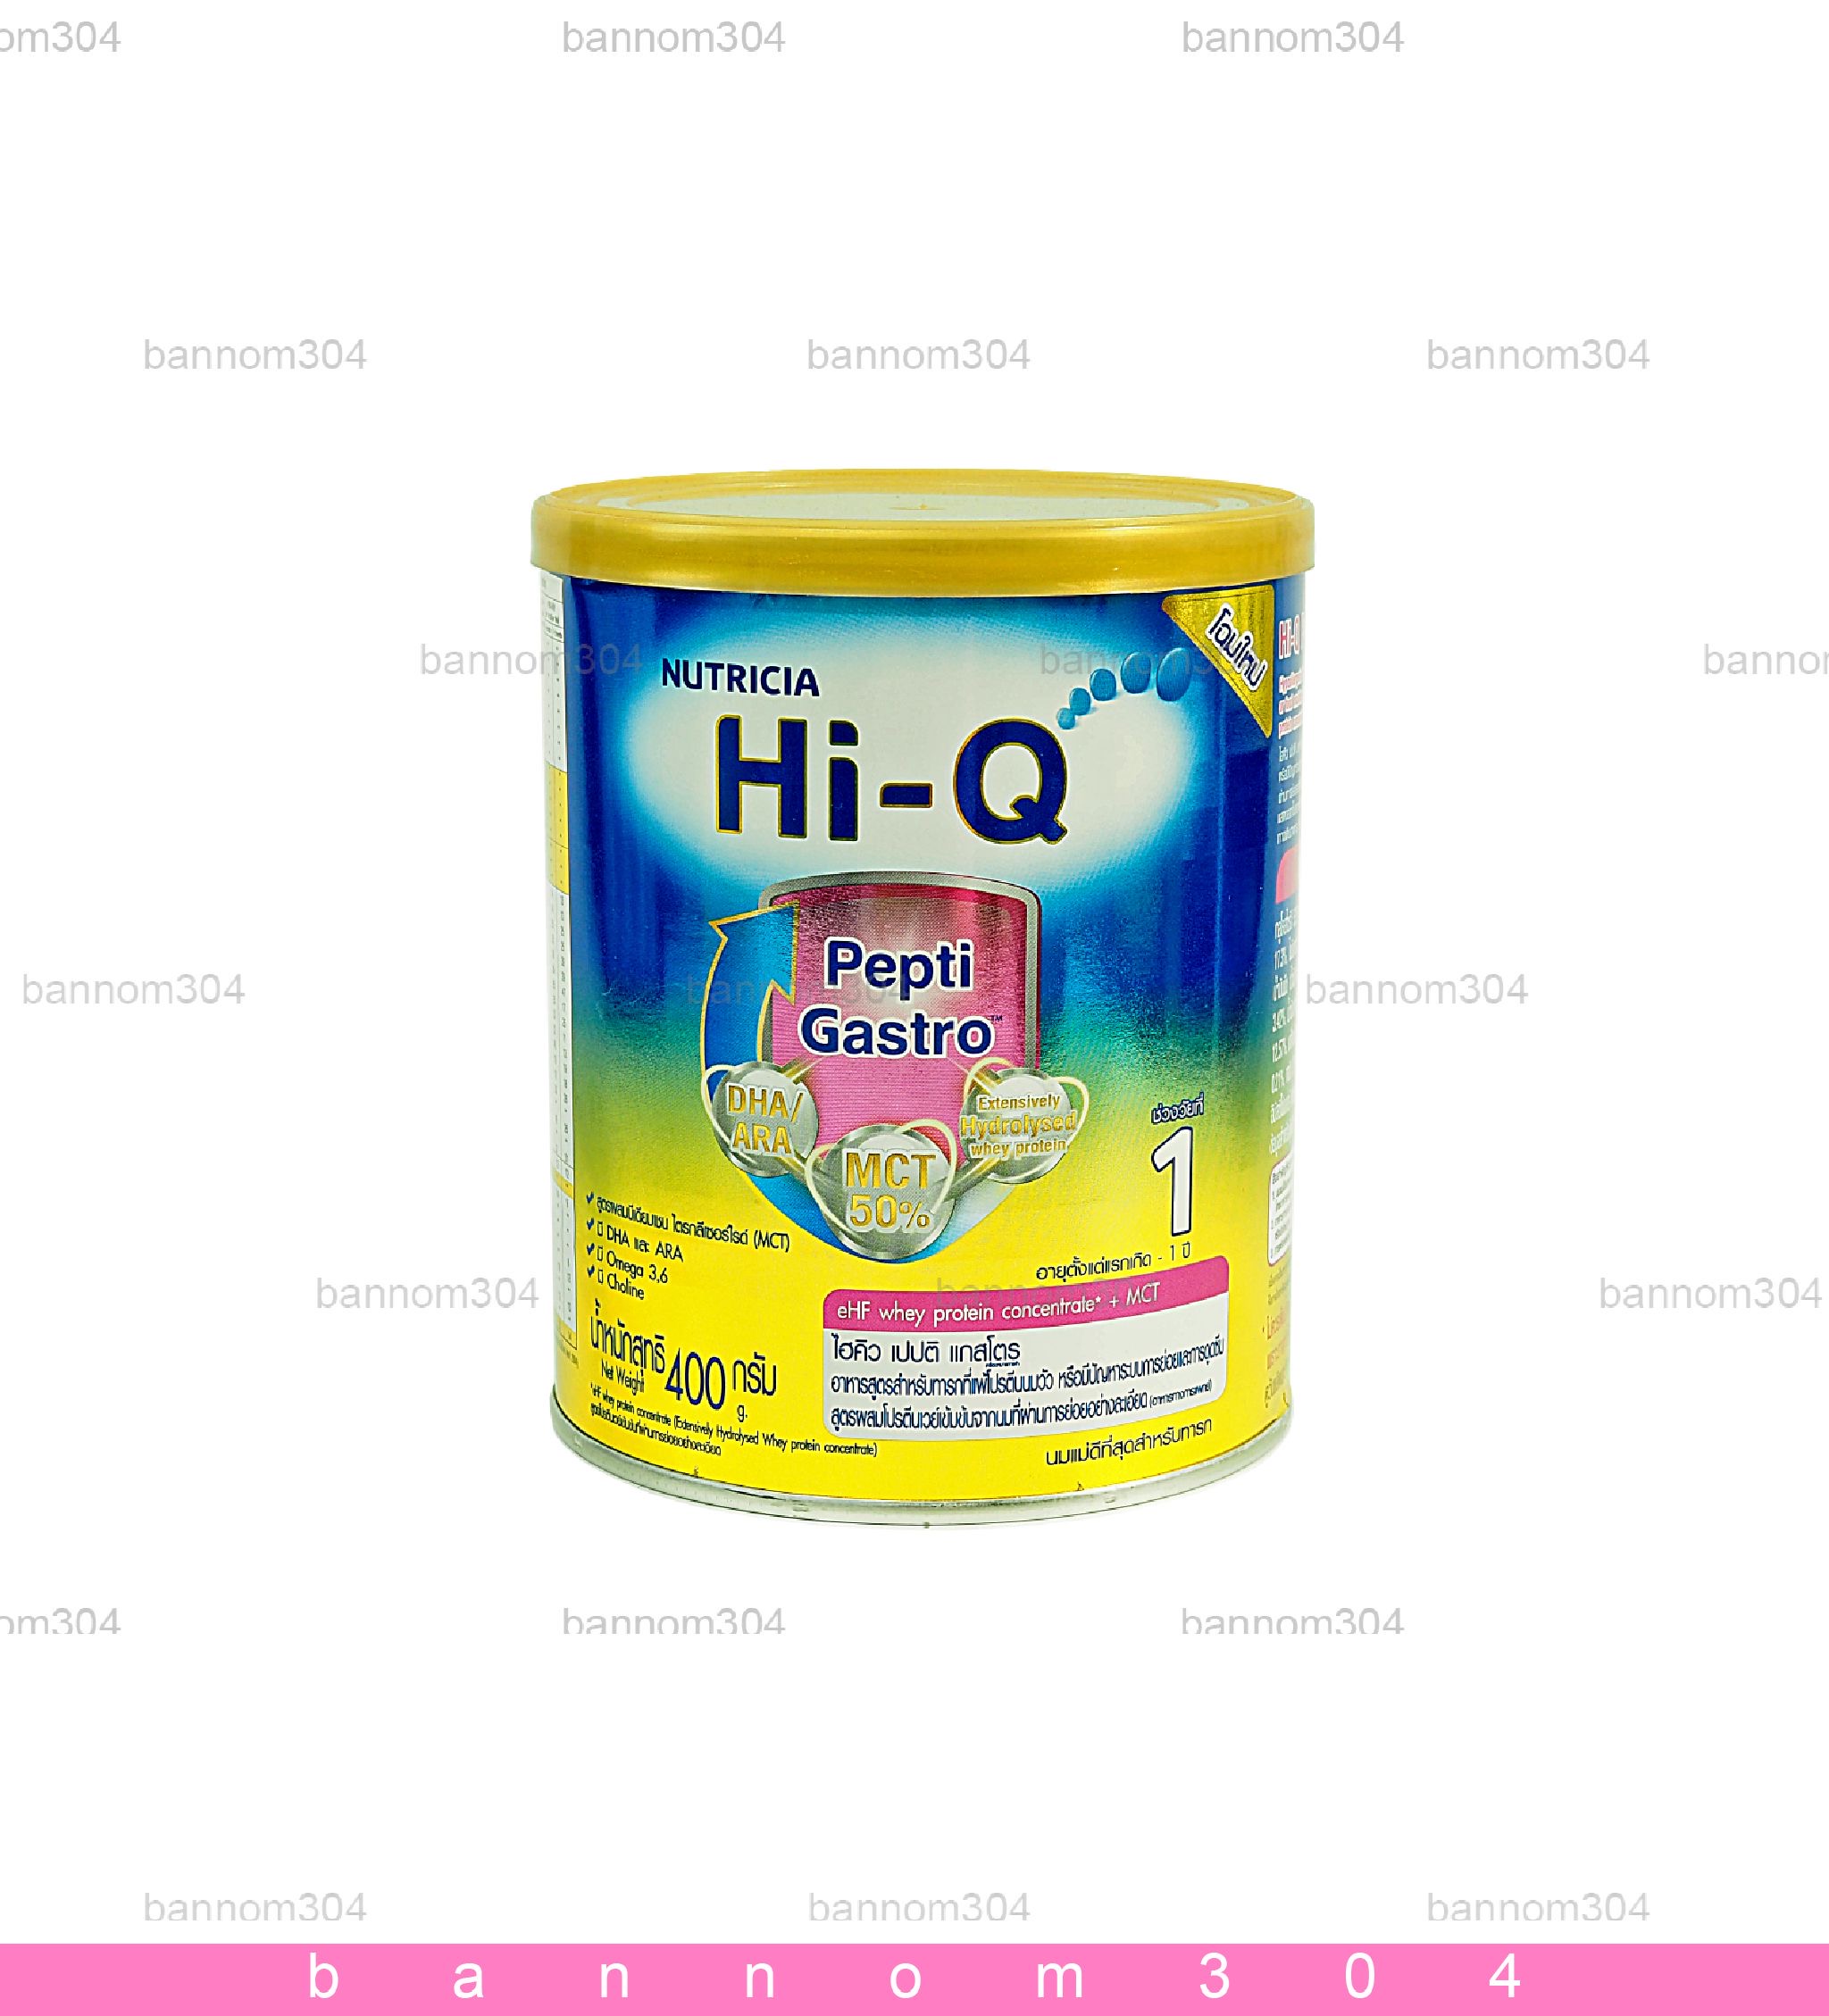 Hi-Q Pepti gastro นมผง ไฮคิว เปบติ แกสโตร ขนาด 400 กรัม จำนวน 1 กระป๋อง